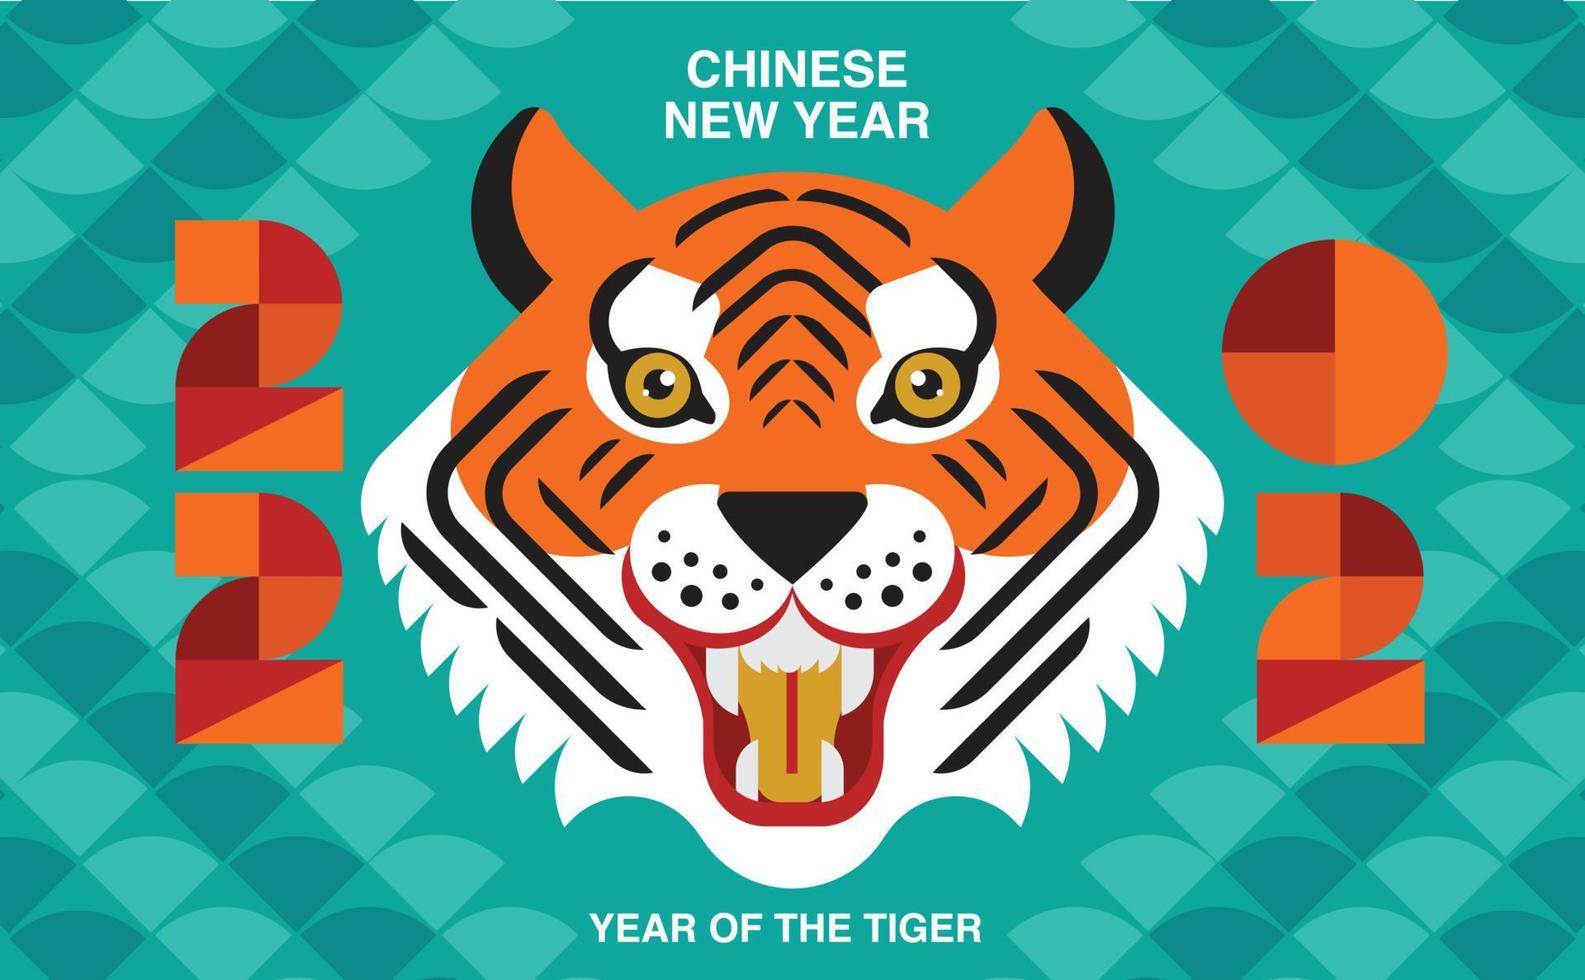 gott nytt år, kinesiskt nytt år, 2022, tigerns år, seriefigur, kunglig tiger, reflekterande platt design vektor